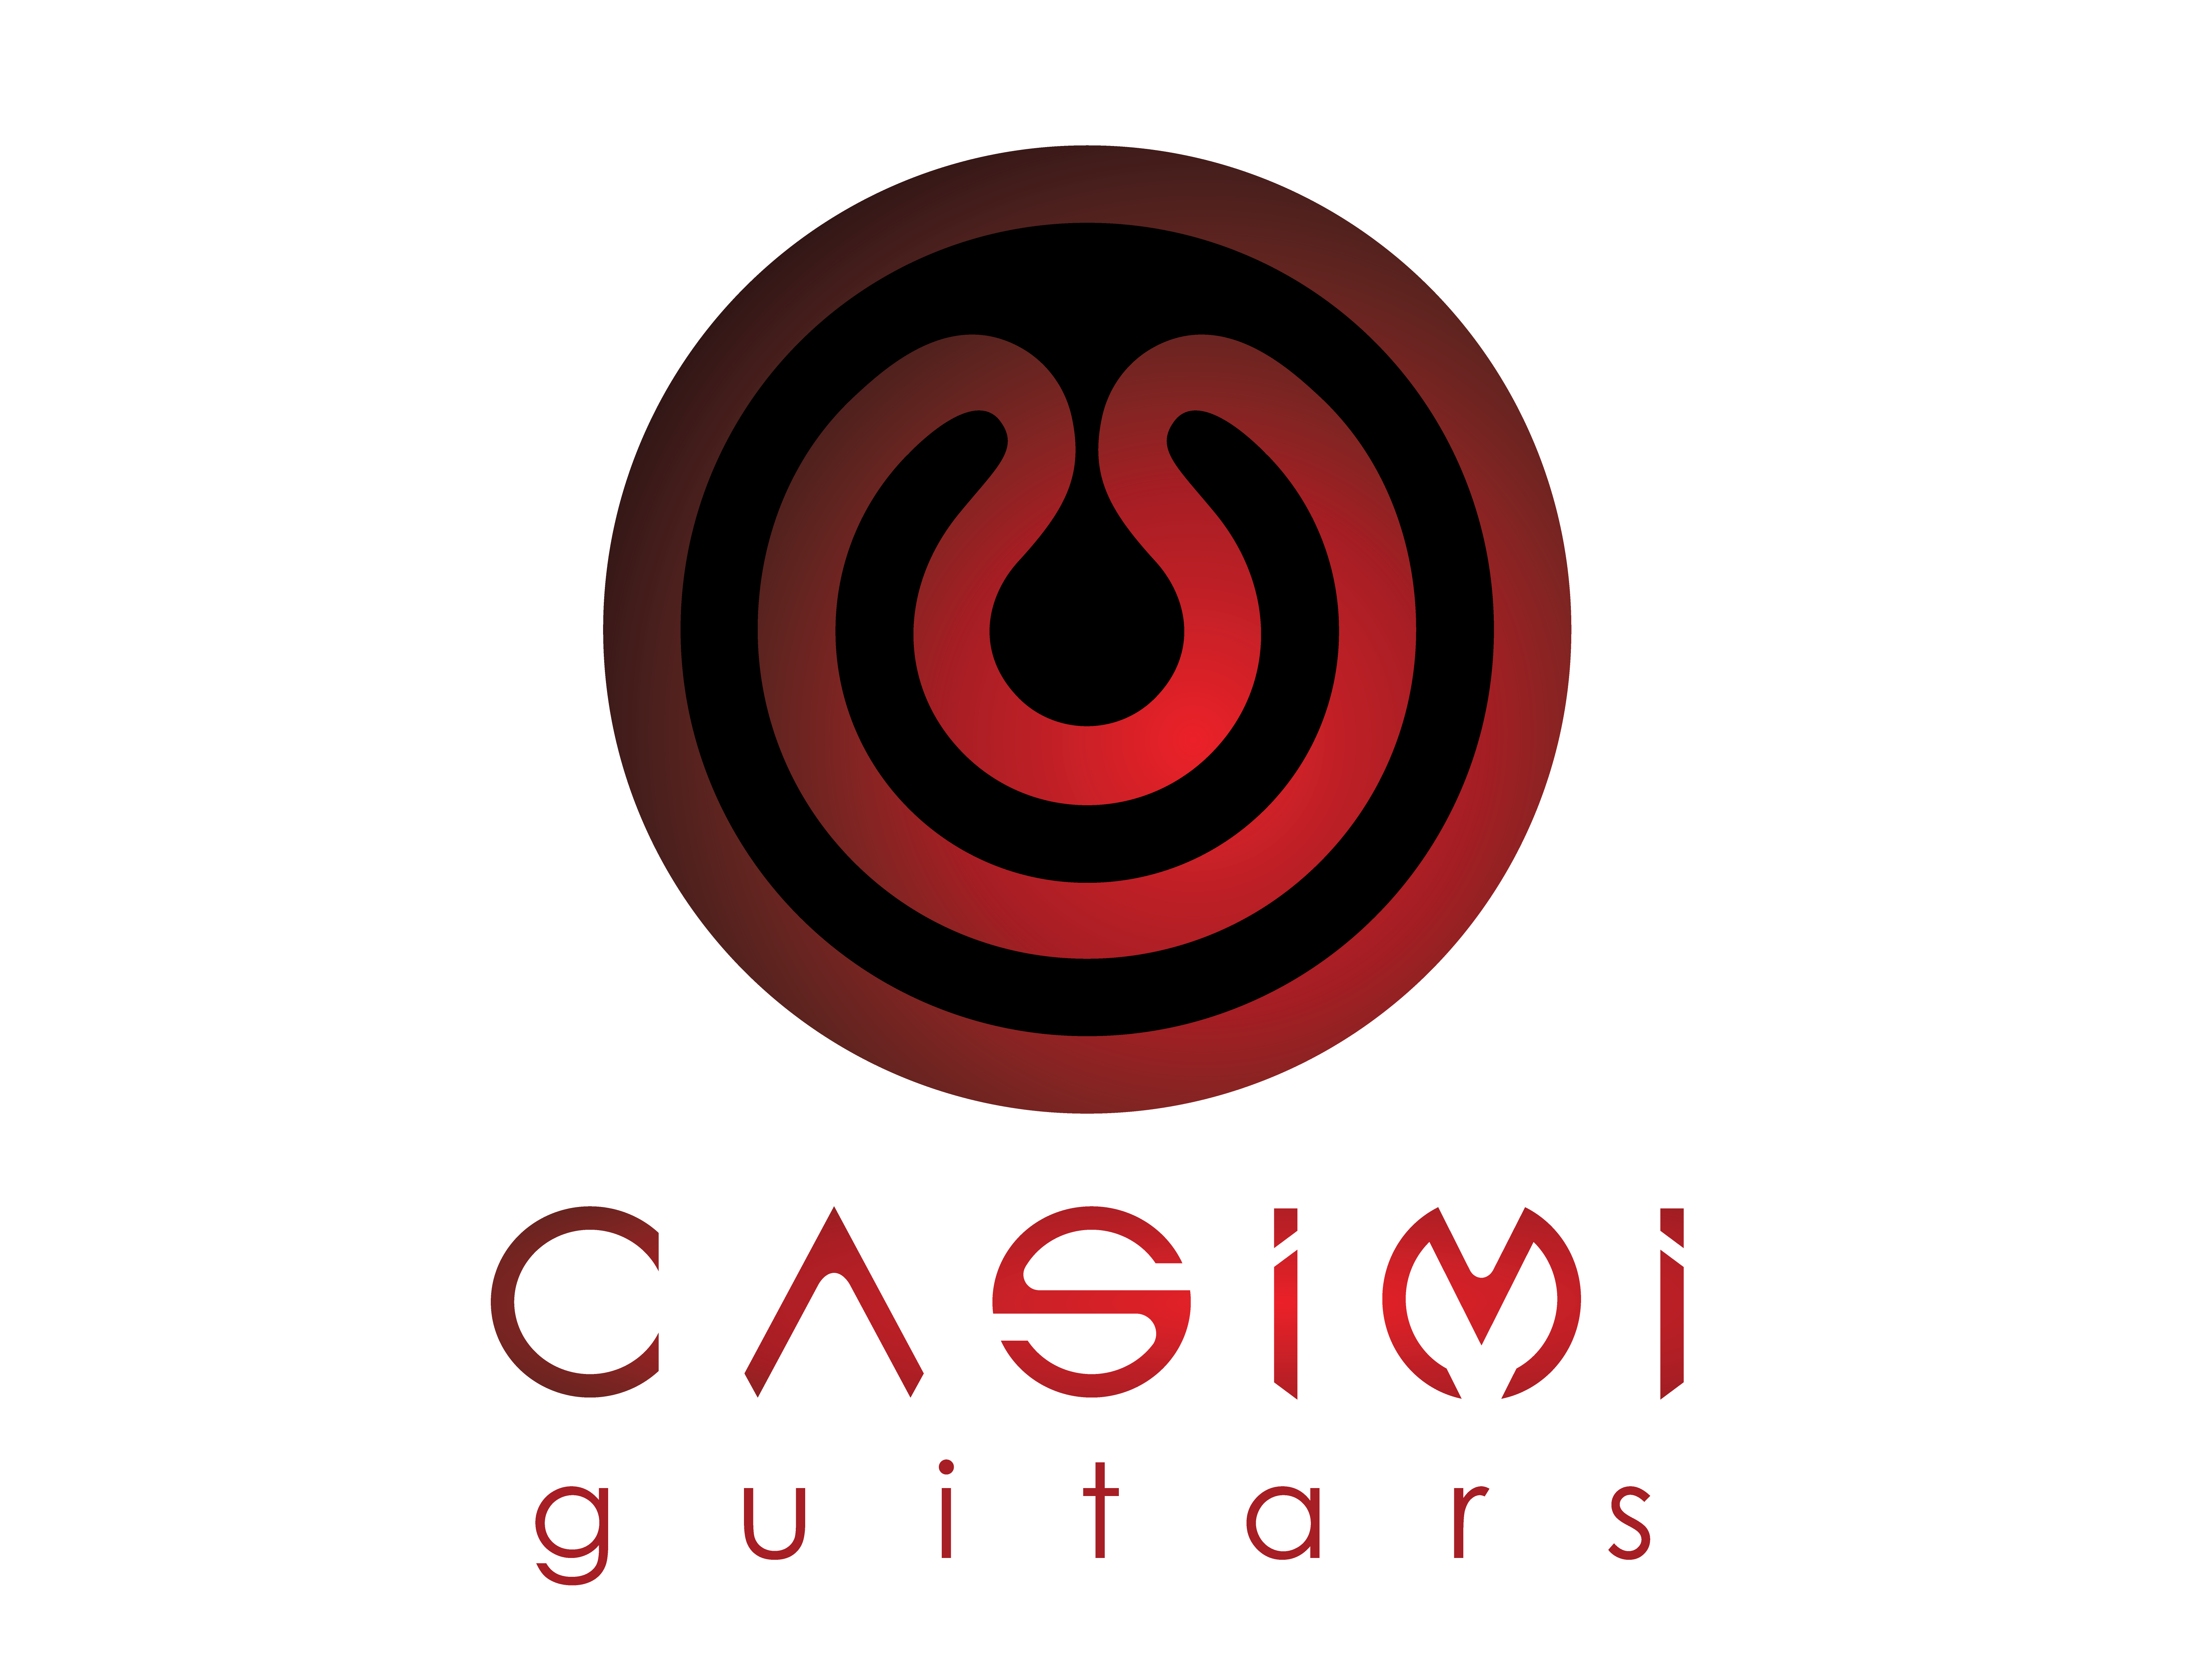 Casimi Guitars